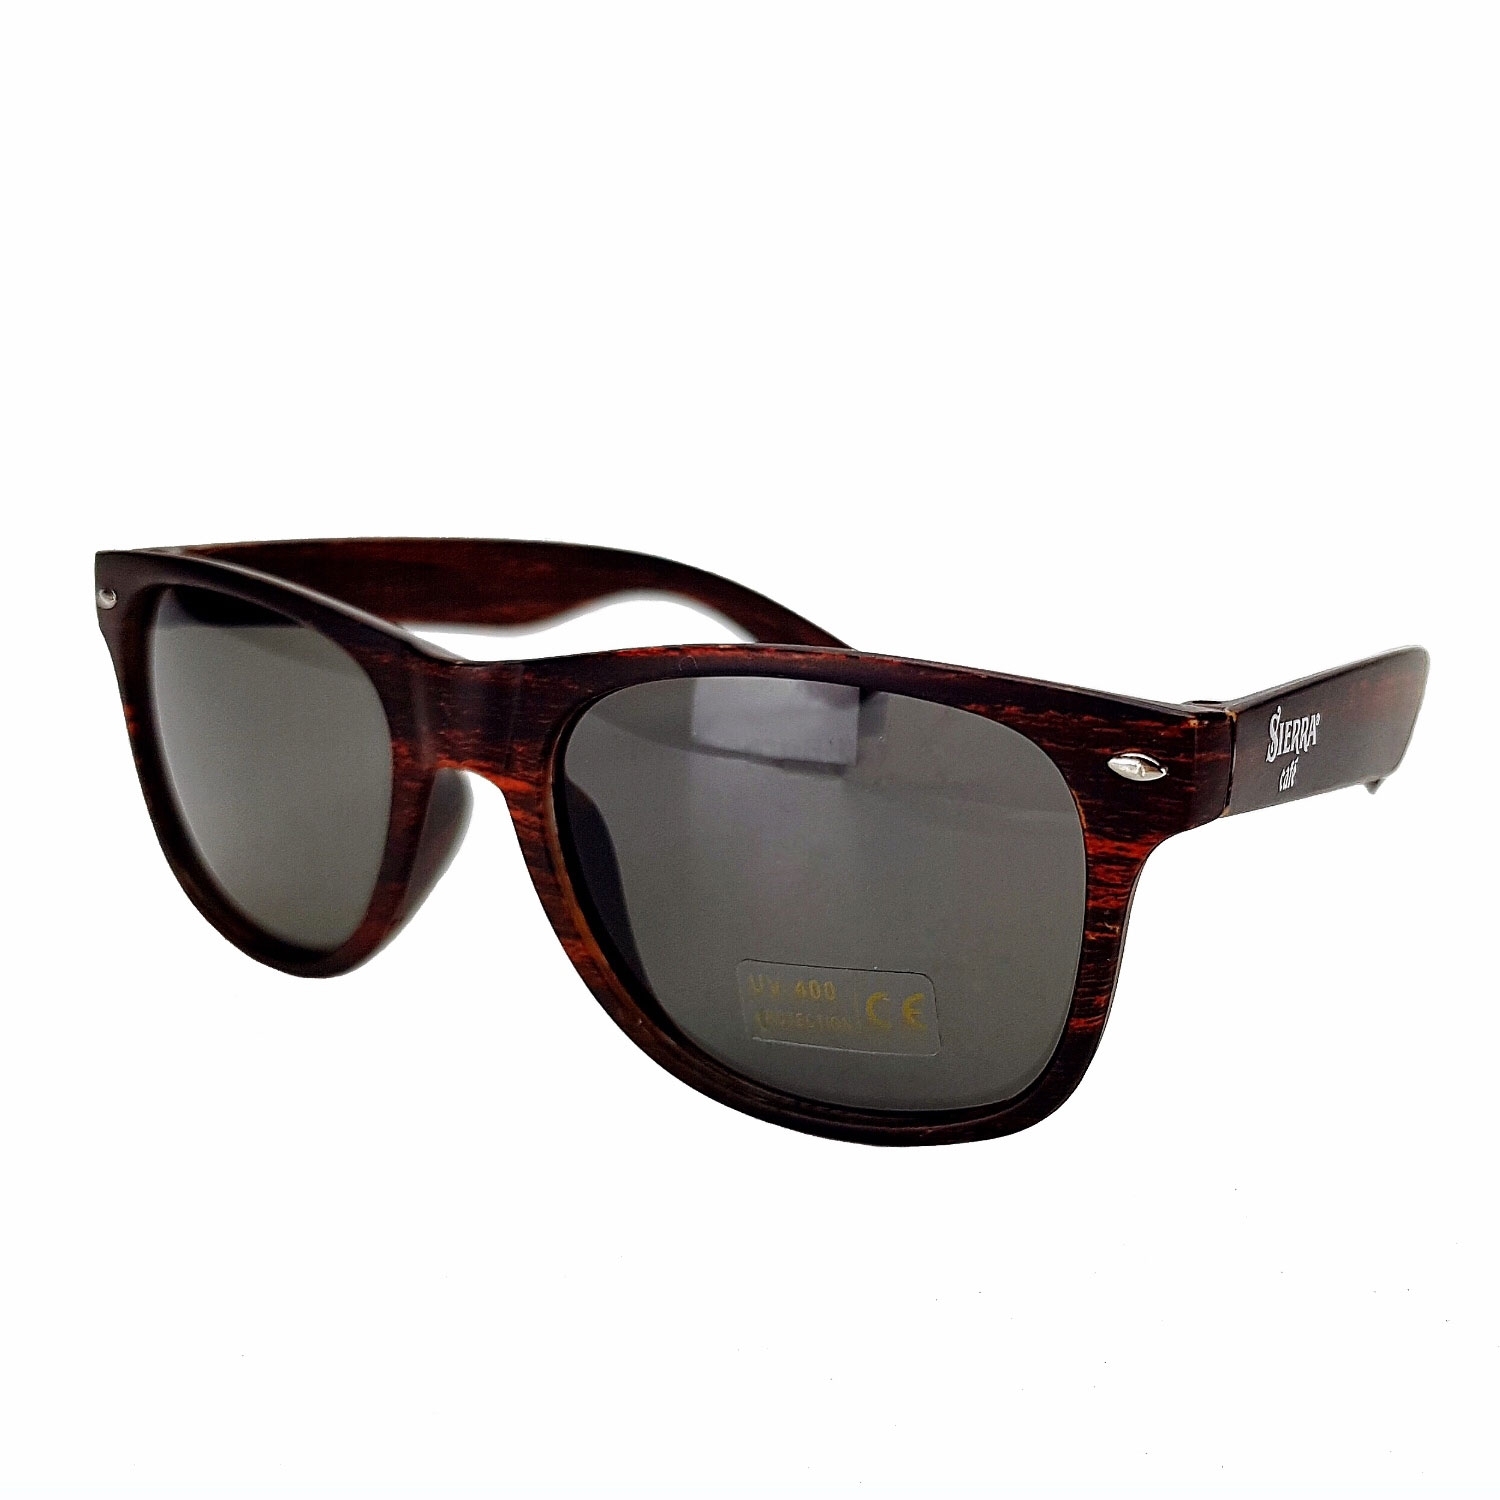 5x Sierra Cafe Sonnenbrille Nerd Brille mit UV 400 Schutz - braun